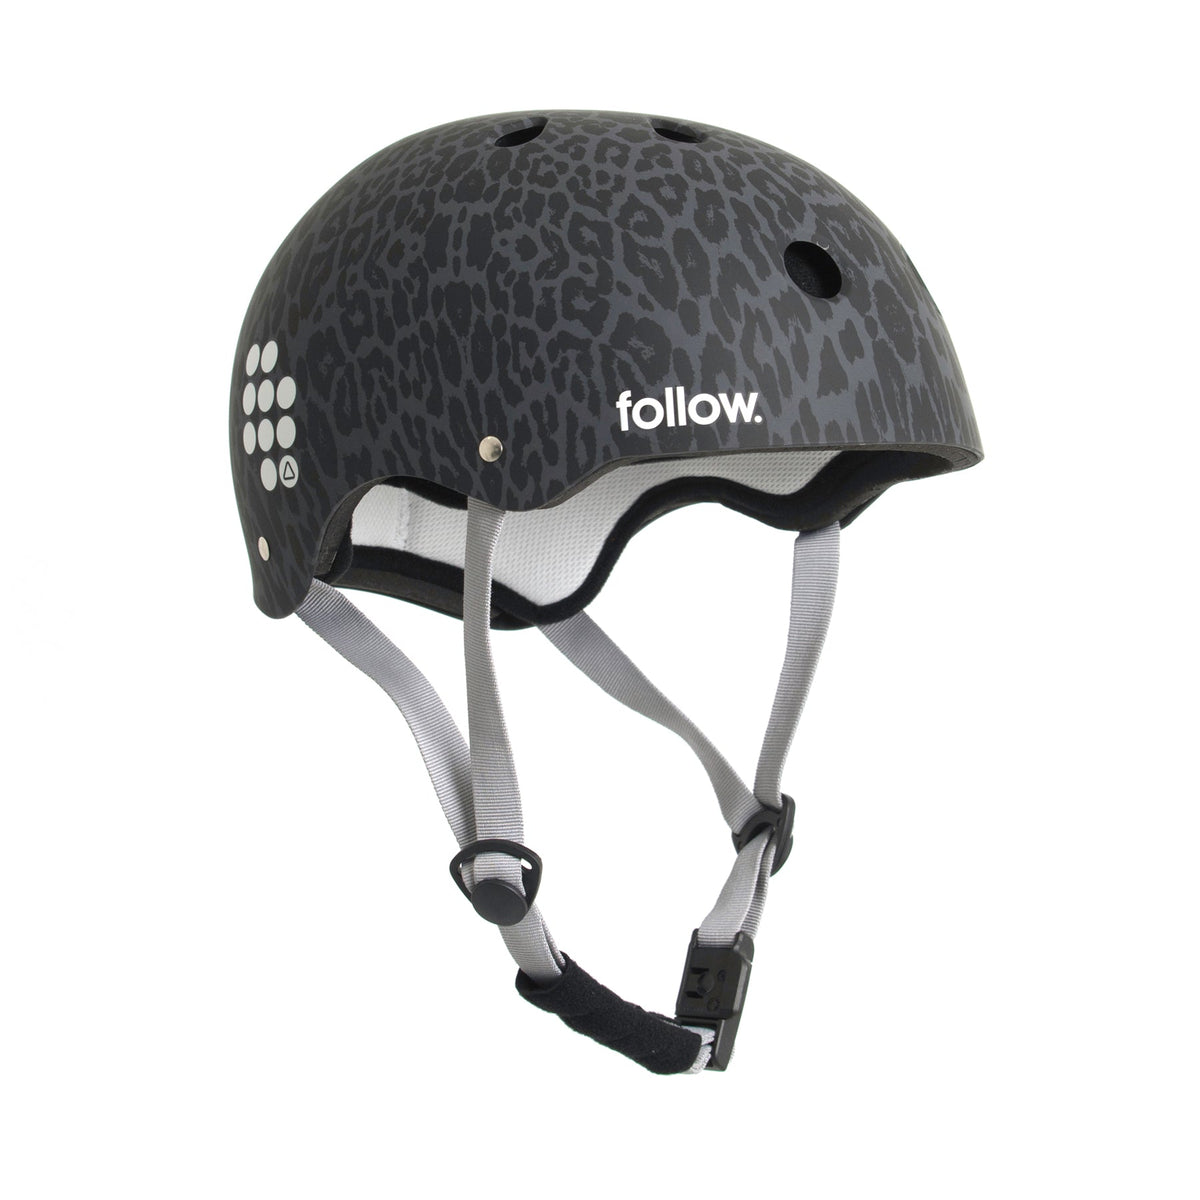 Follow Pro Graphic Helmet in Leopard - BoardCo